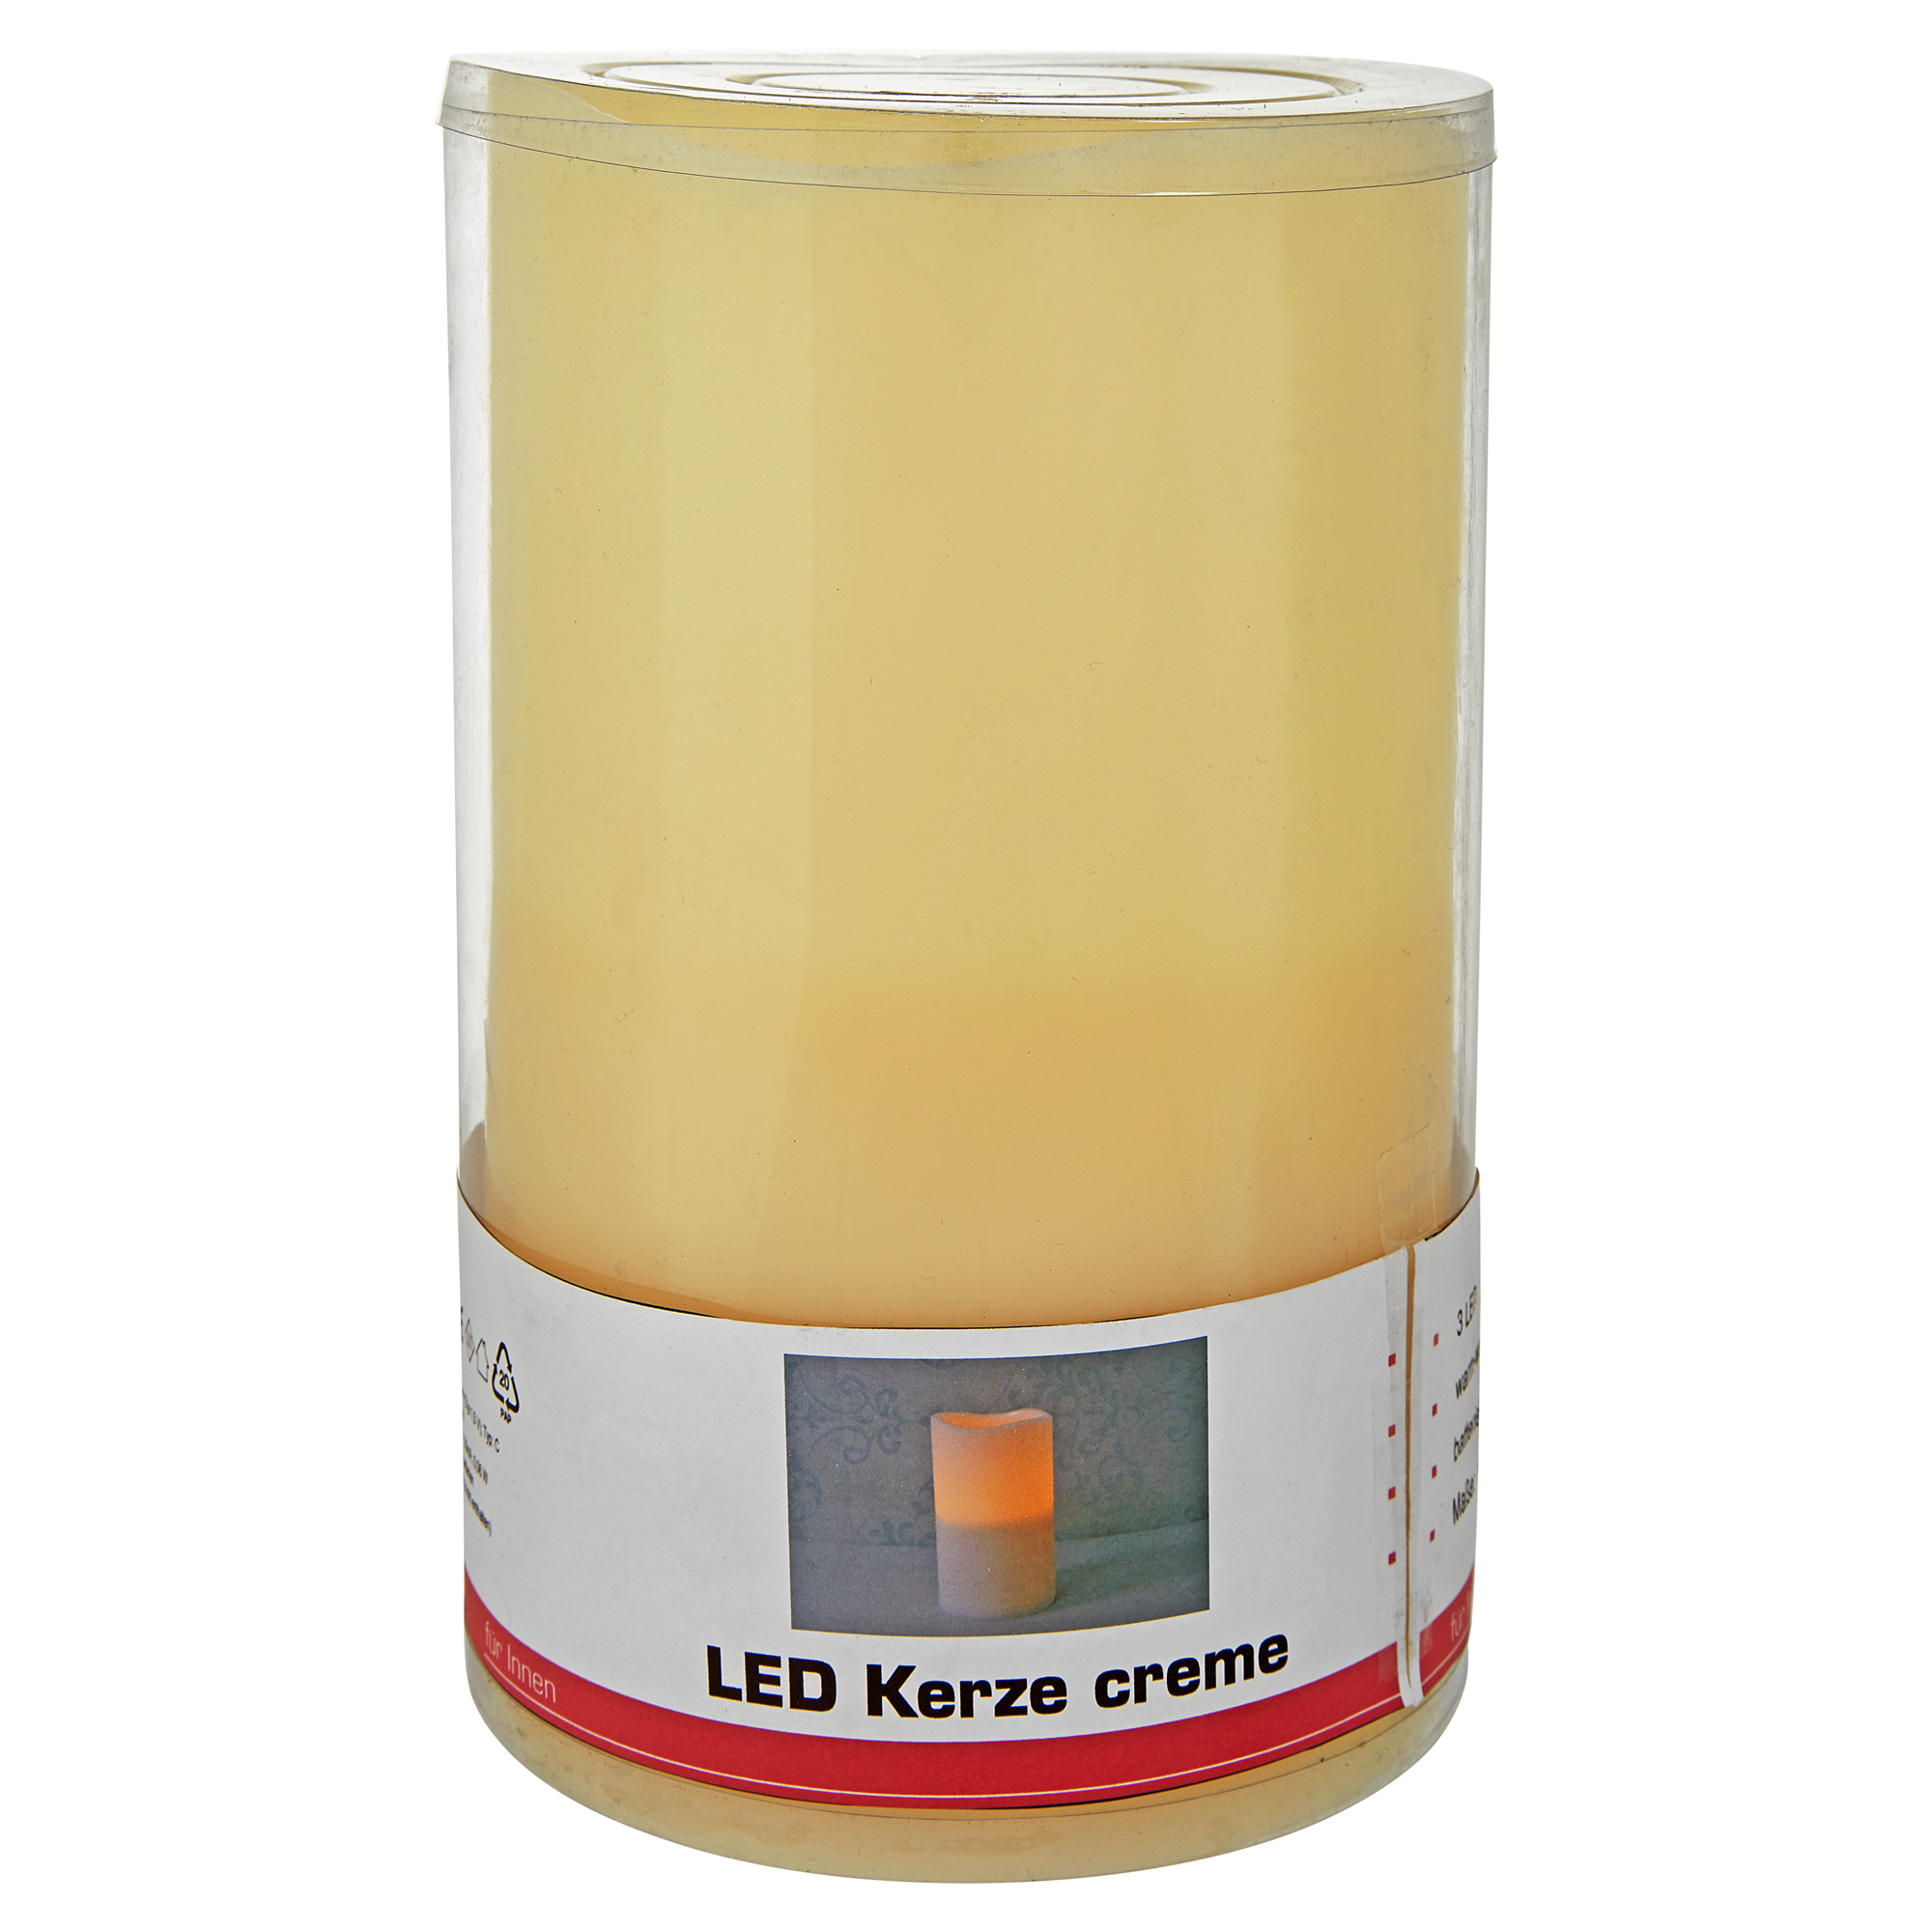 LED-Kerze cremefarben Ø 15 x 24,5 cm + product picture